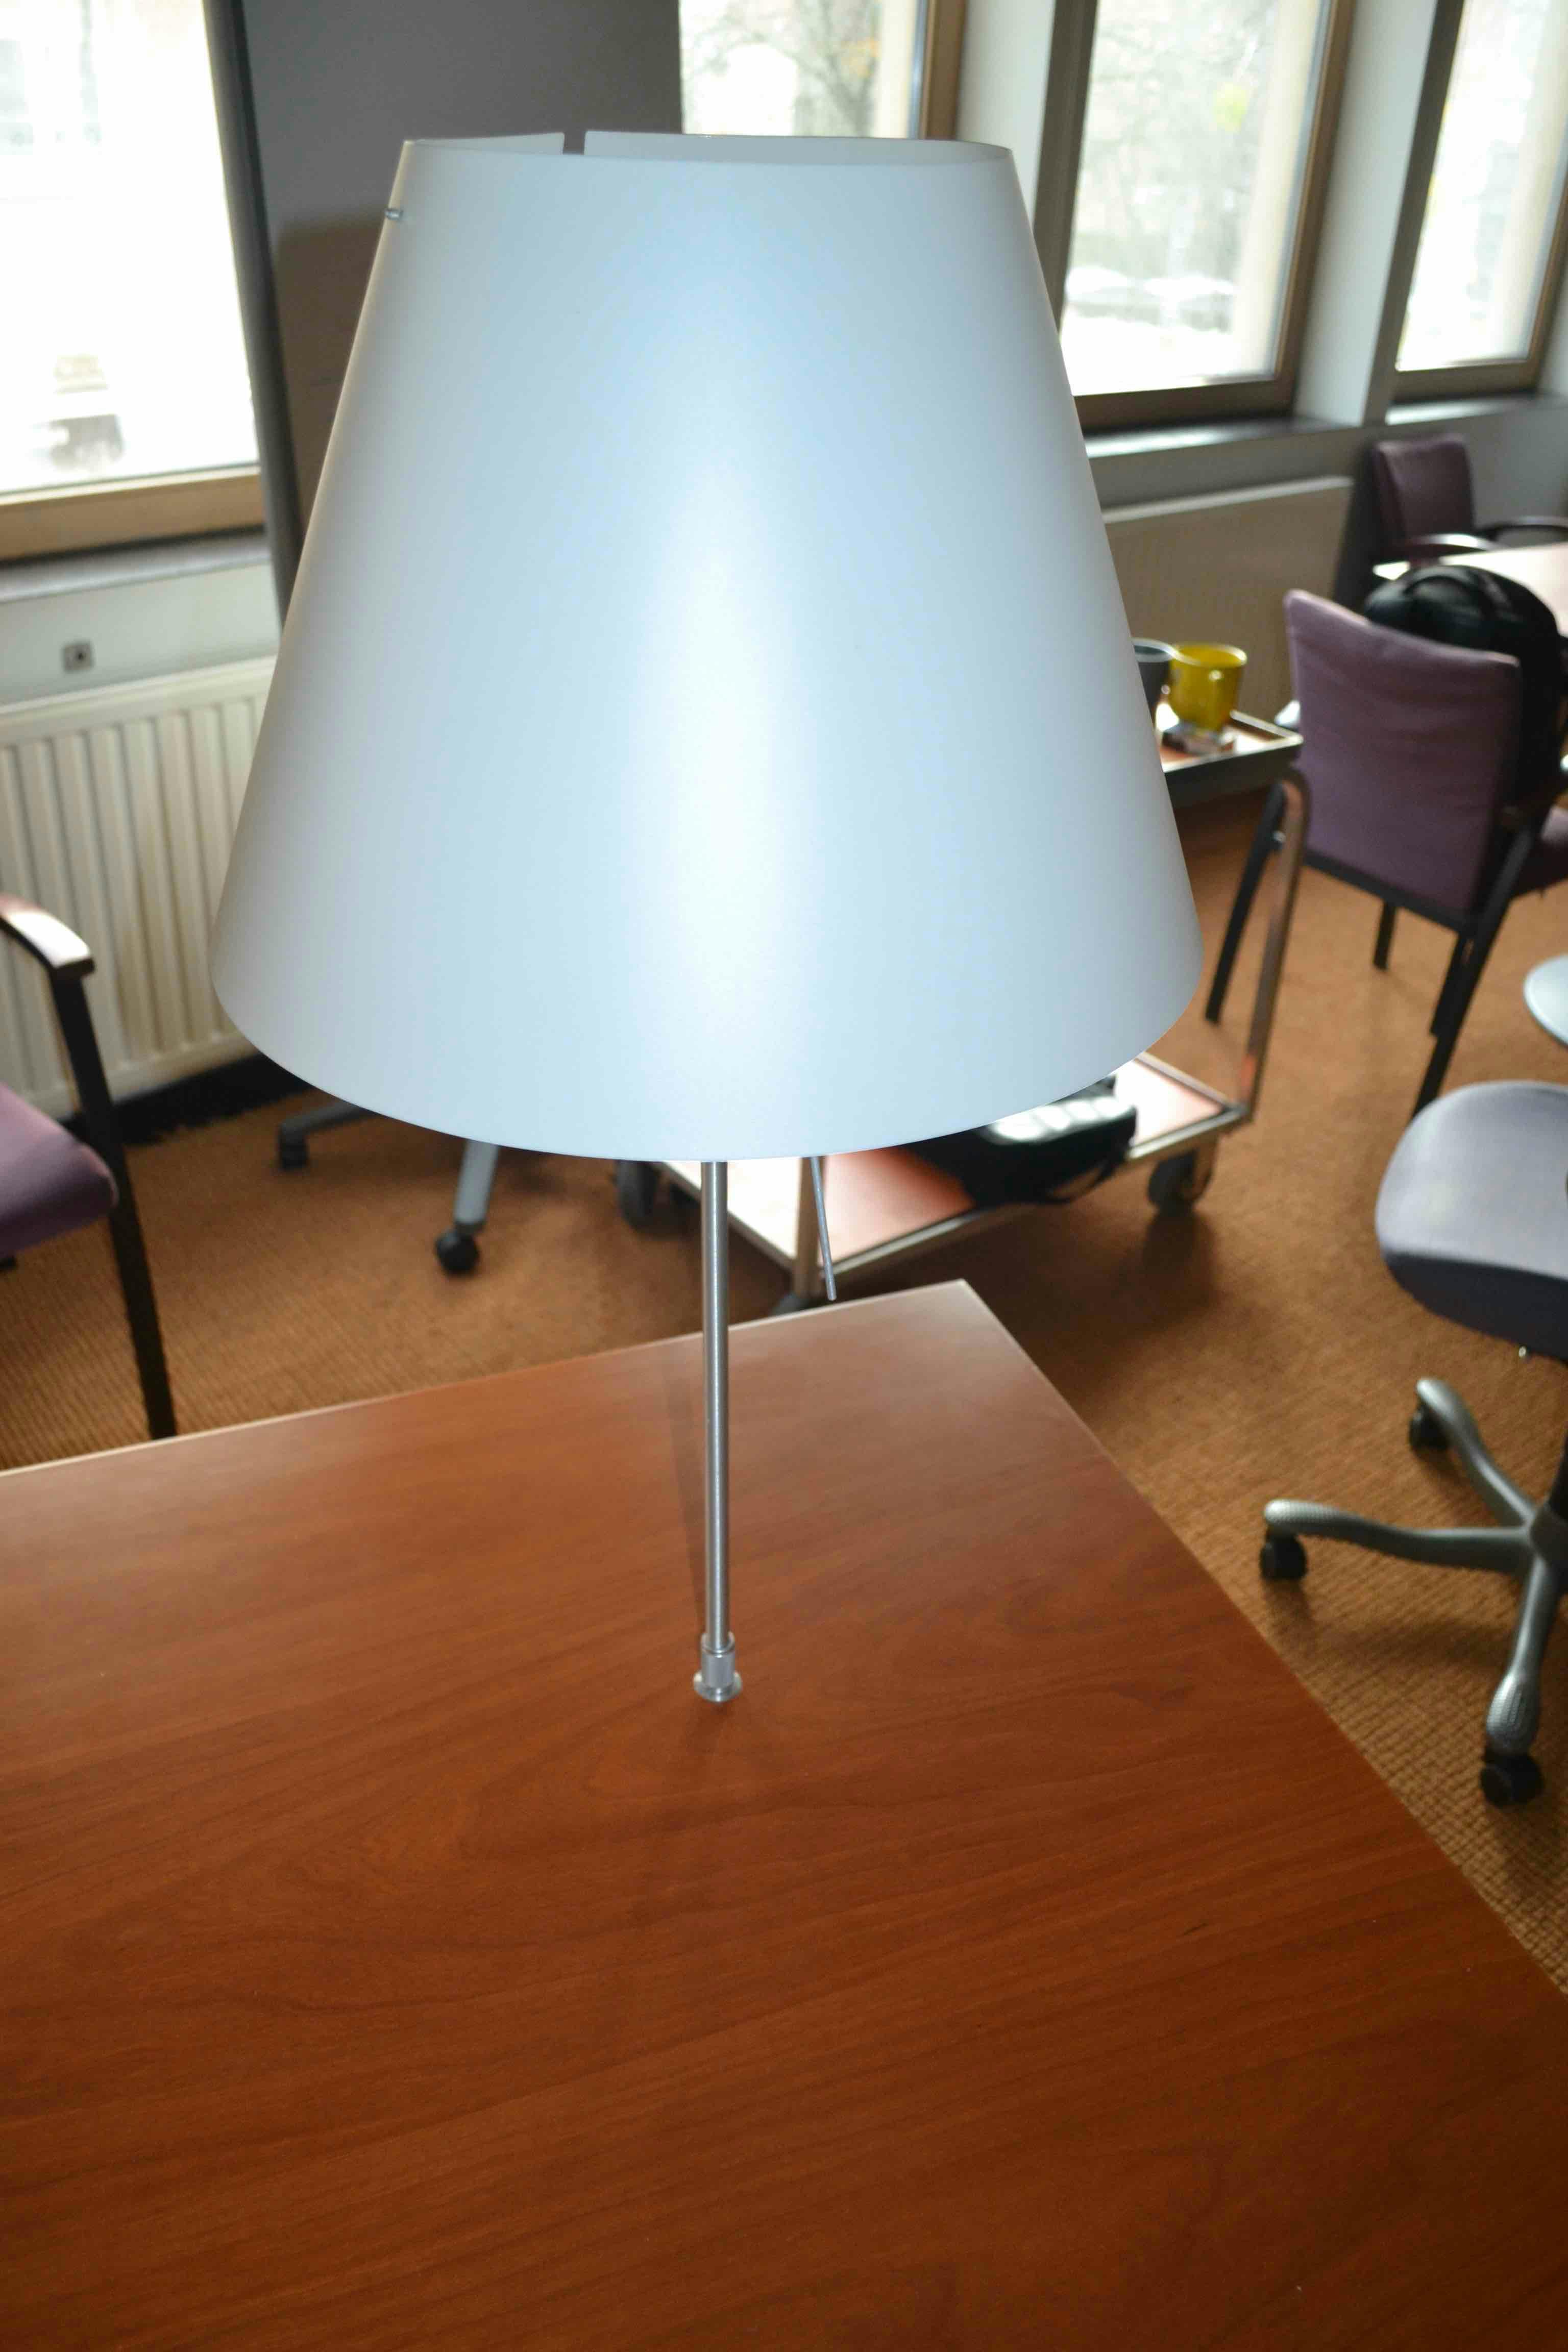 Bureau en L avec lampe / Bureau L Vorm met lamp - Second hand quality "Desks" - Relieve Furniture - 2